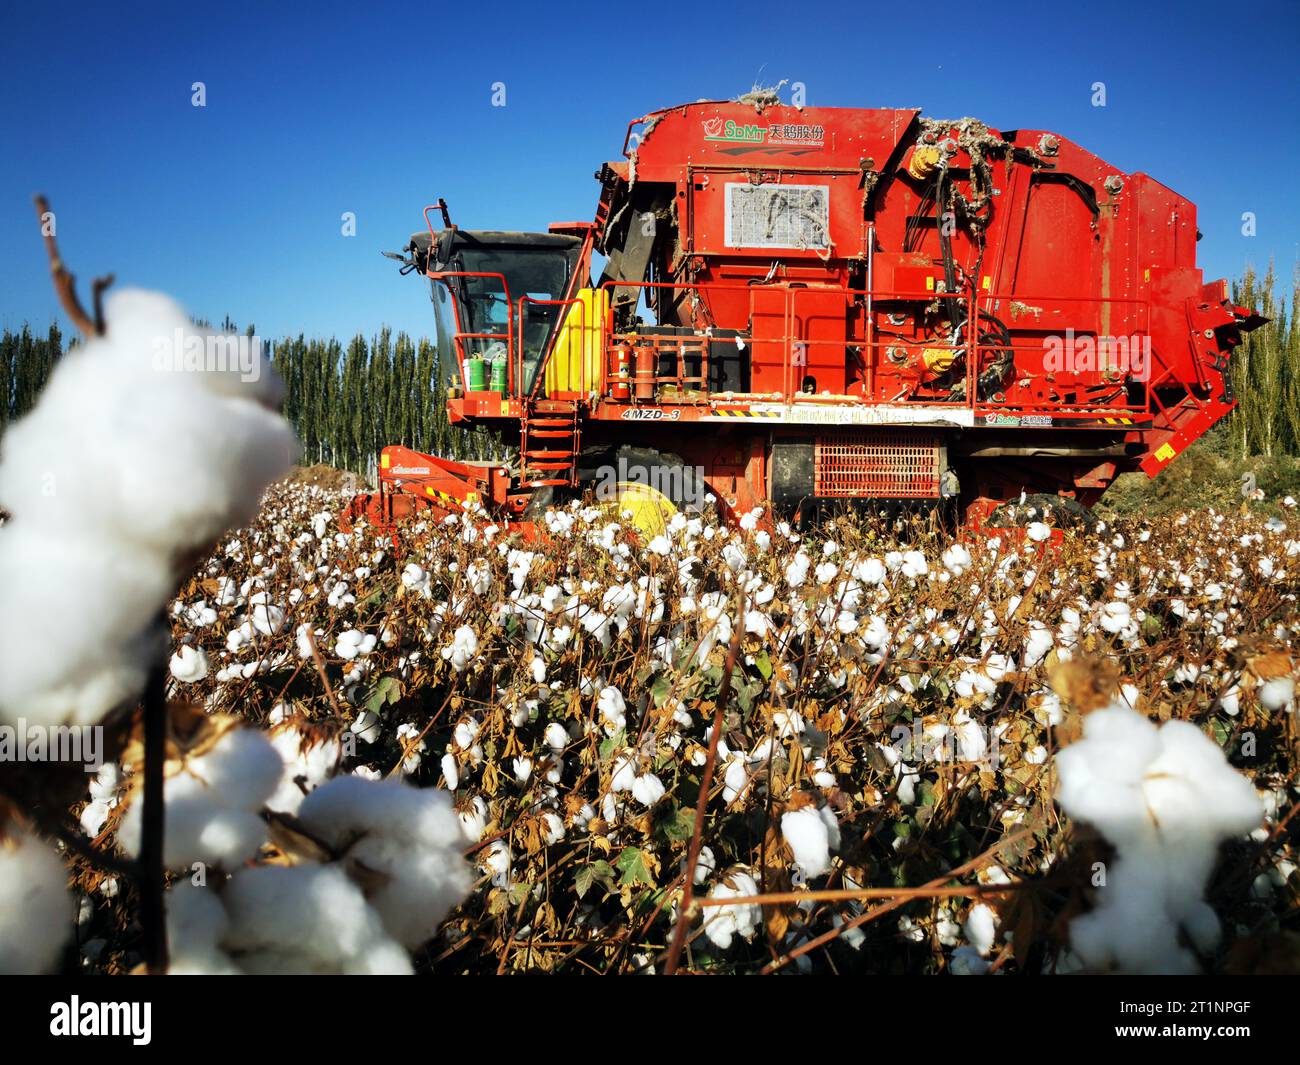 AKSU, CINA - 15 OTTOBRE 2023 - Un agricoltore guida una raccoglitrice di cotone per raccogliere cotone in un campo nella città di Aksu, nella regione autonoma di Xinjiang Uygur, Cina, O. Foto Stock